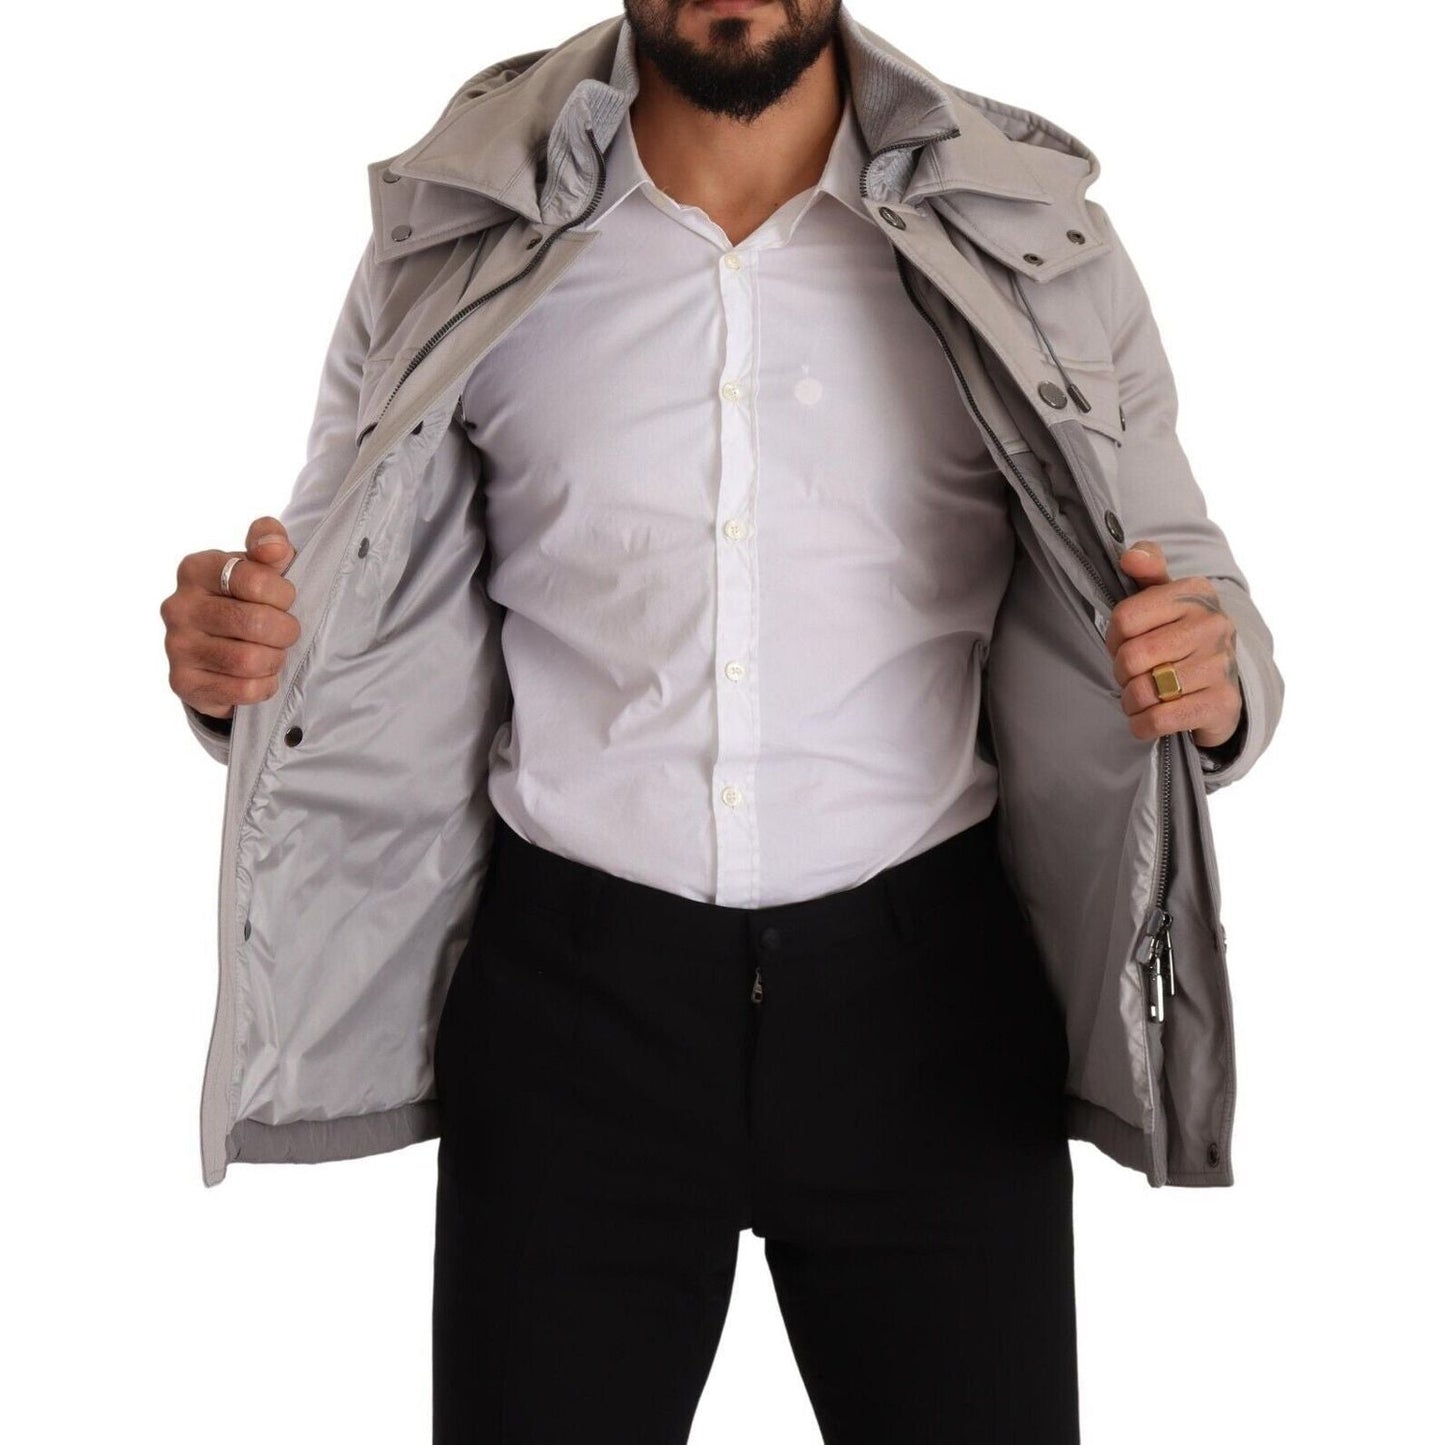 Dolce & Gabbana Elegant Lightweight Gray Windbreaker Jacket gray-cotton-windbreaker-hooded-parka-jacket s-l1600-4-150-6a10bc68-c82_71564f11-b944-4c61-b40e-f77b56c43080.jpg